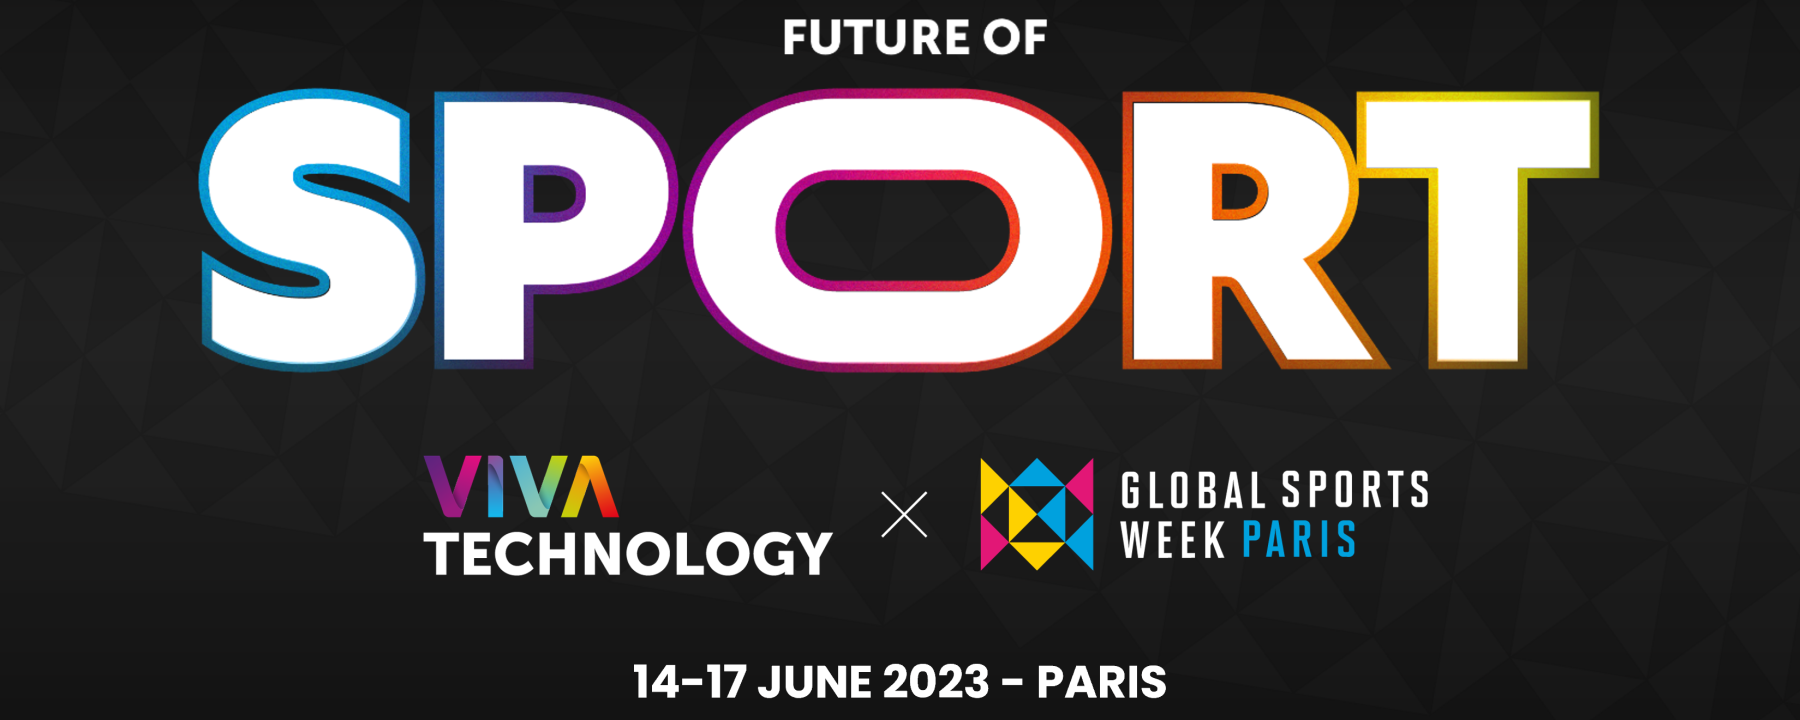 Future of Sport - Viva Technology 2023